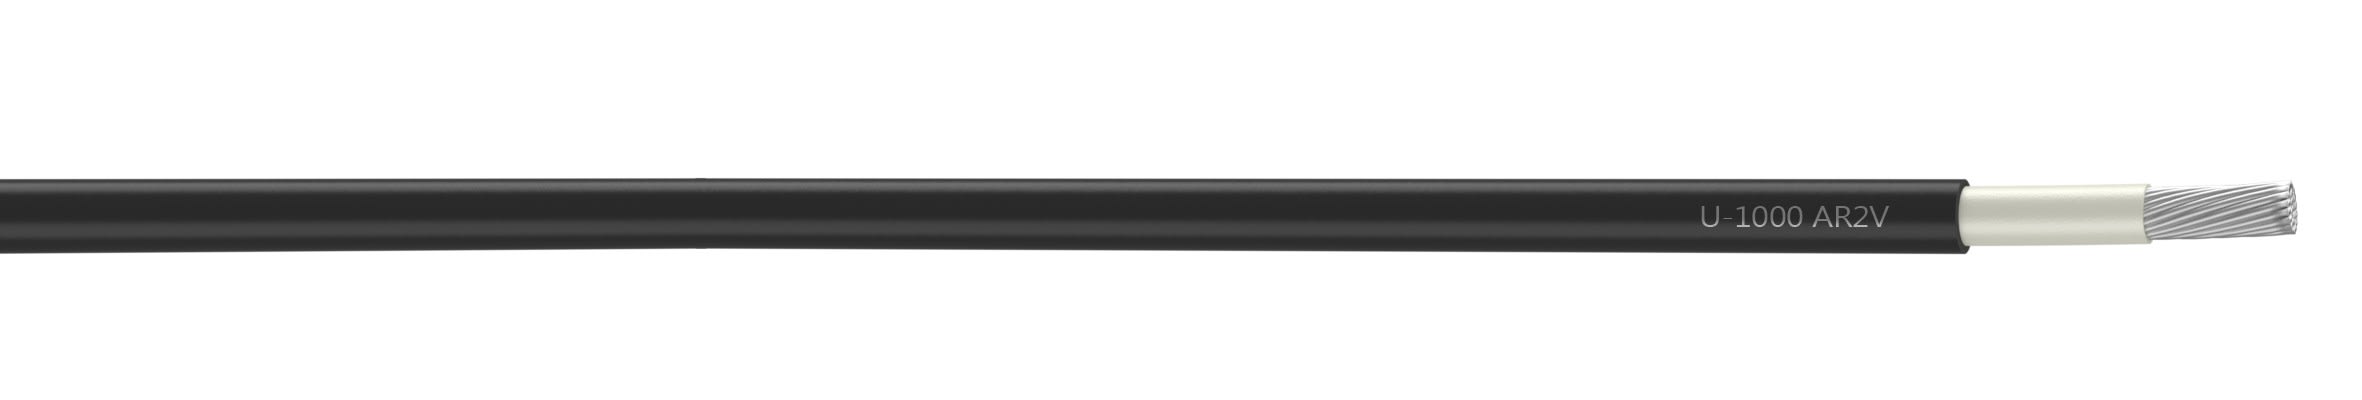 Nexans - Câble rigide U-1000 AR2V aluminium 1x50 longueur à la coupe